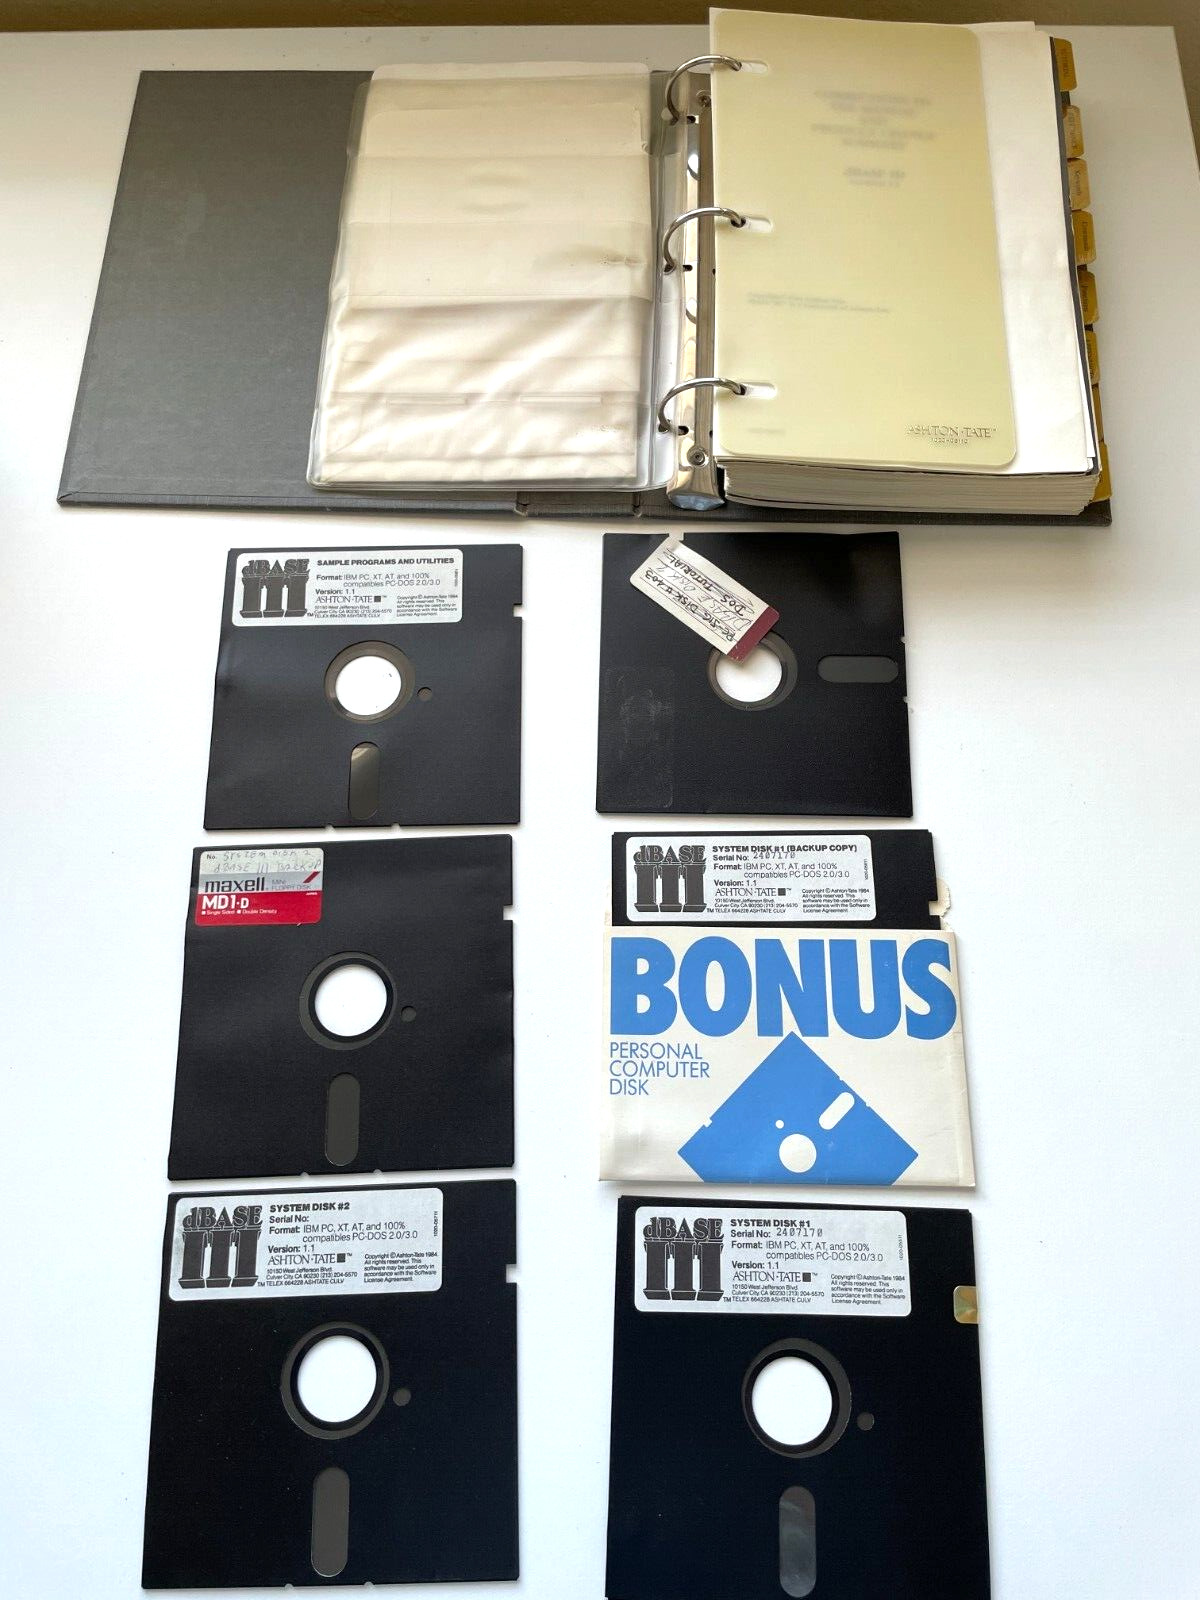 dBASE III Ashton Tait Manual 1984 Six Disc Slipcase Ring Binder Vintage Software